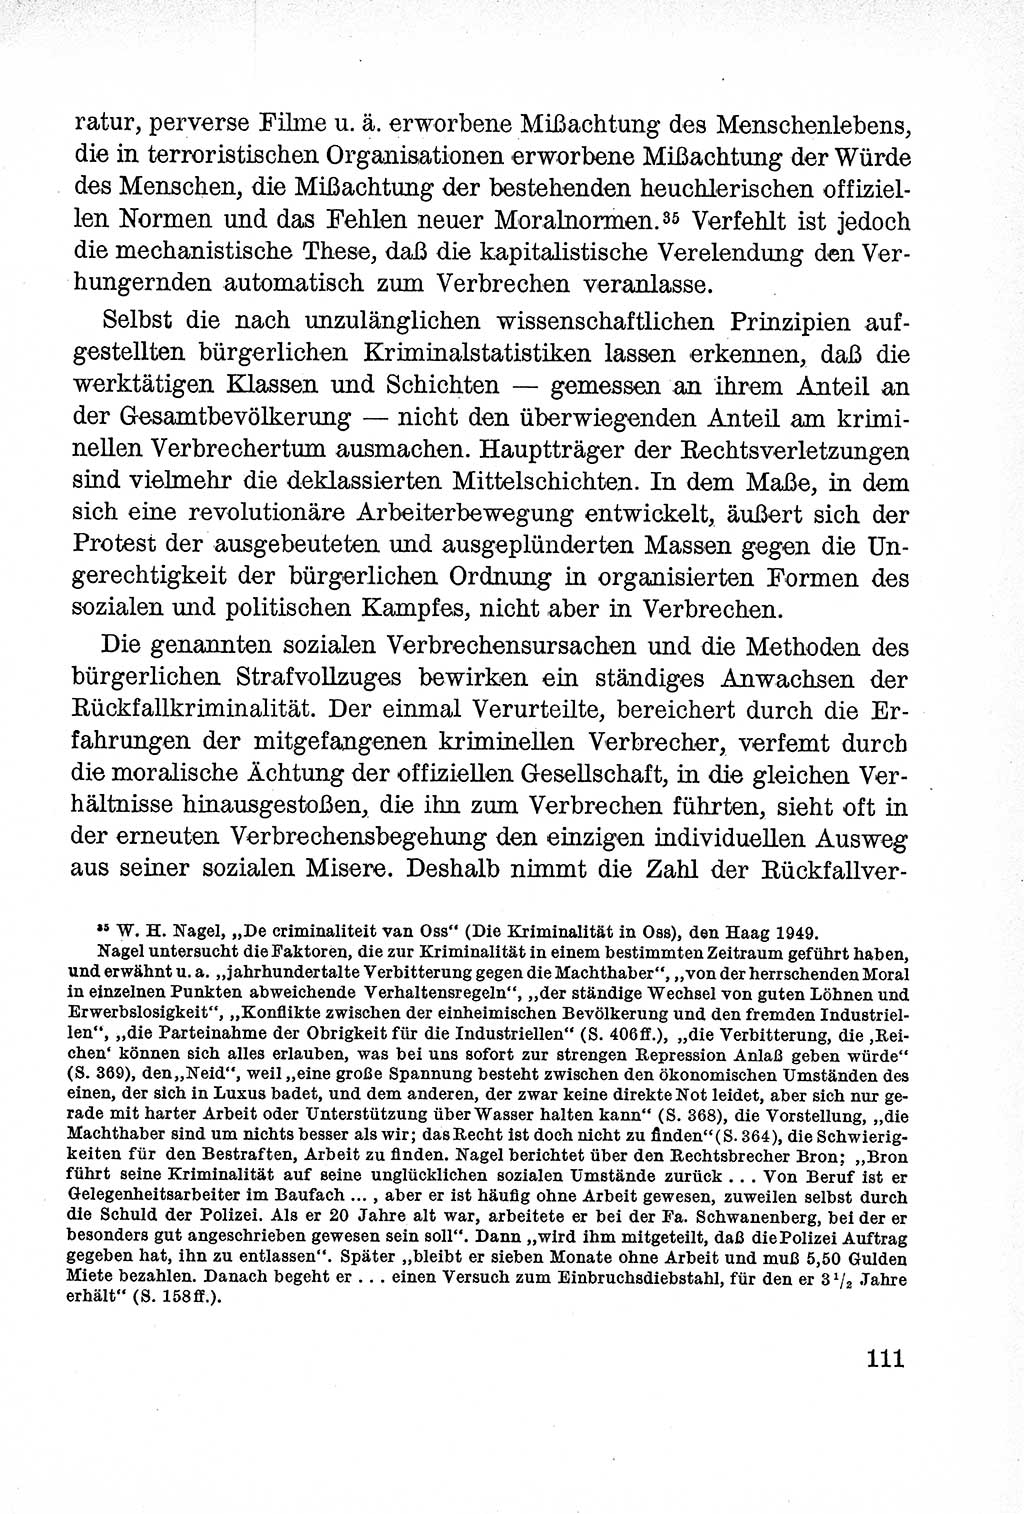 Lehrbuch des Strafrechts der Deutschen Demokratischen Republik (DDR), Allgemeiner Teil 1957, Seite 111 (Lb. Strafr. DDR AT 1957, S. 111)